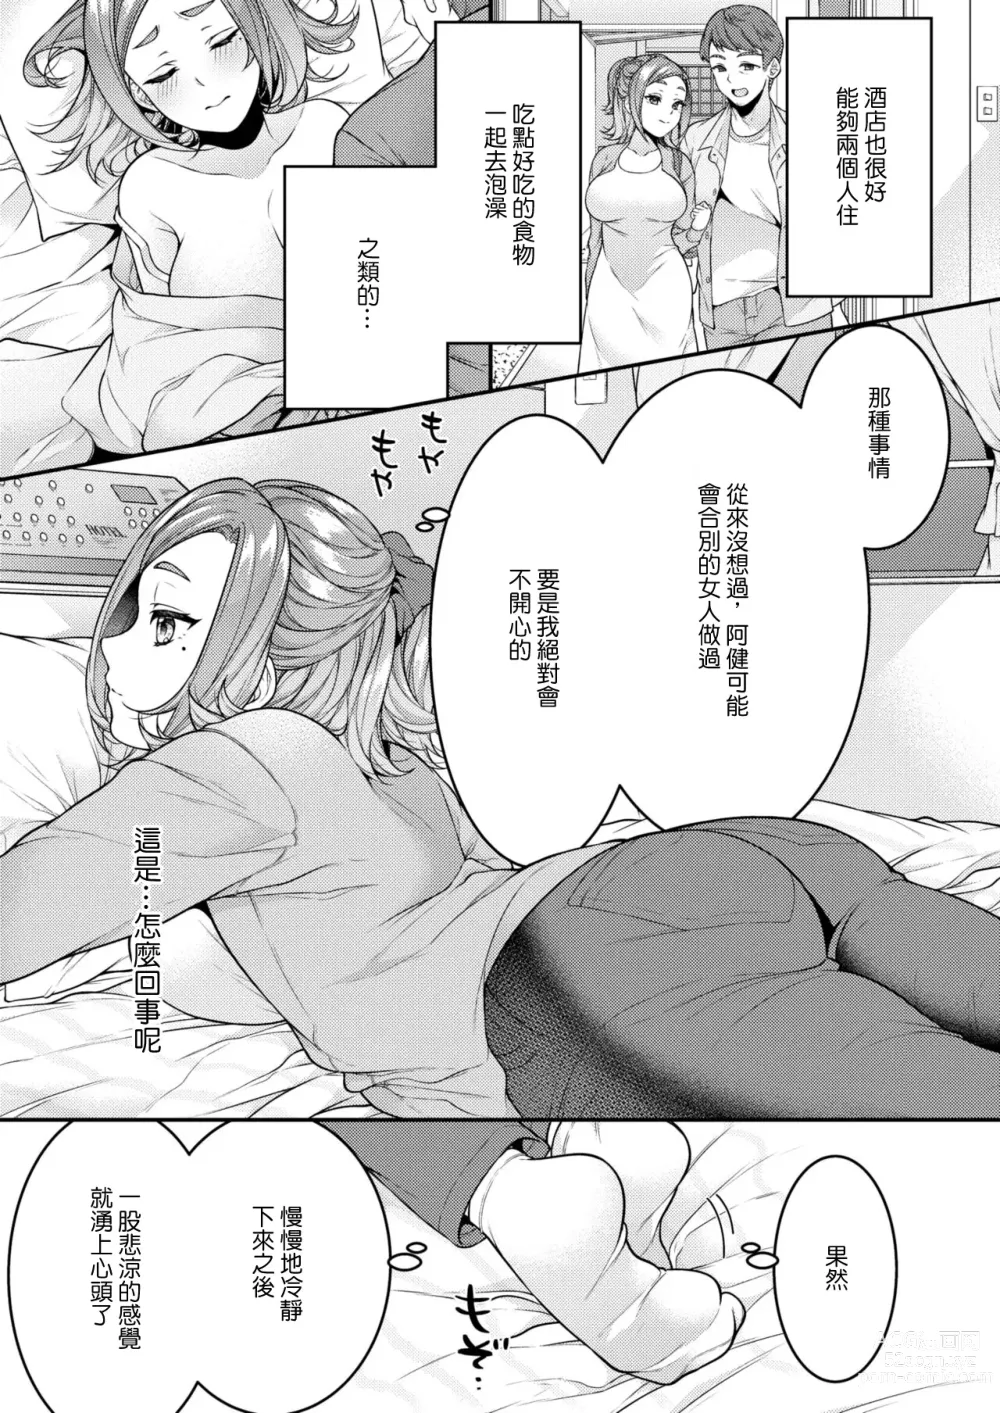 Page 7 of manga Danna to Shitai dake nanoni...